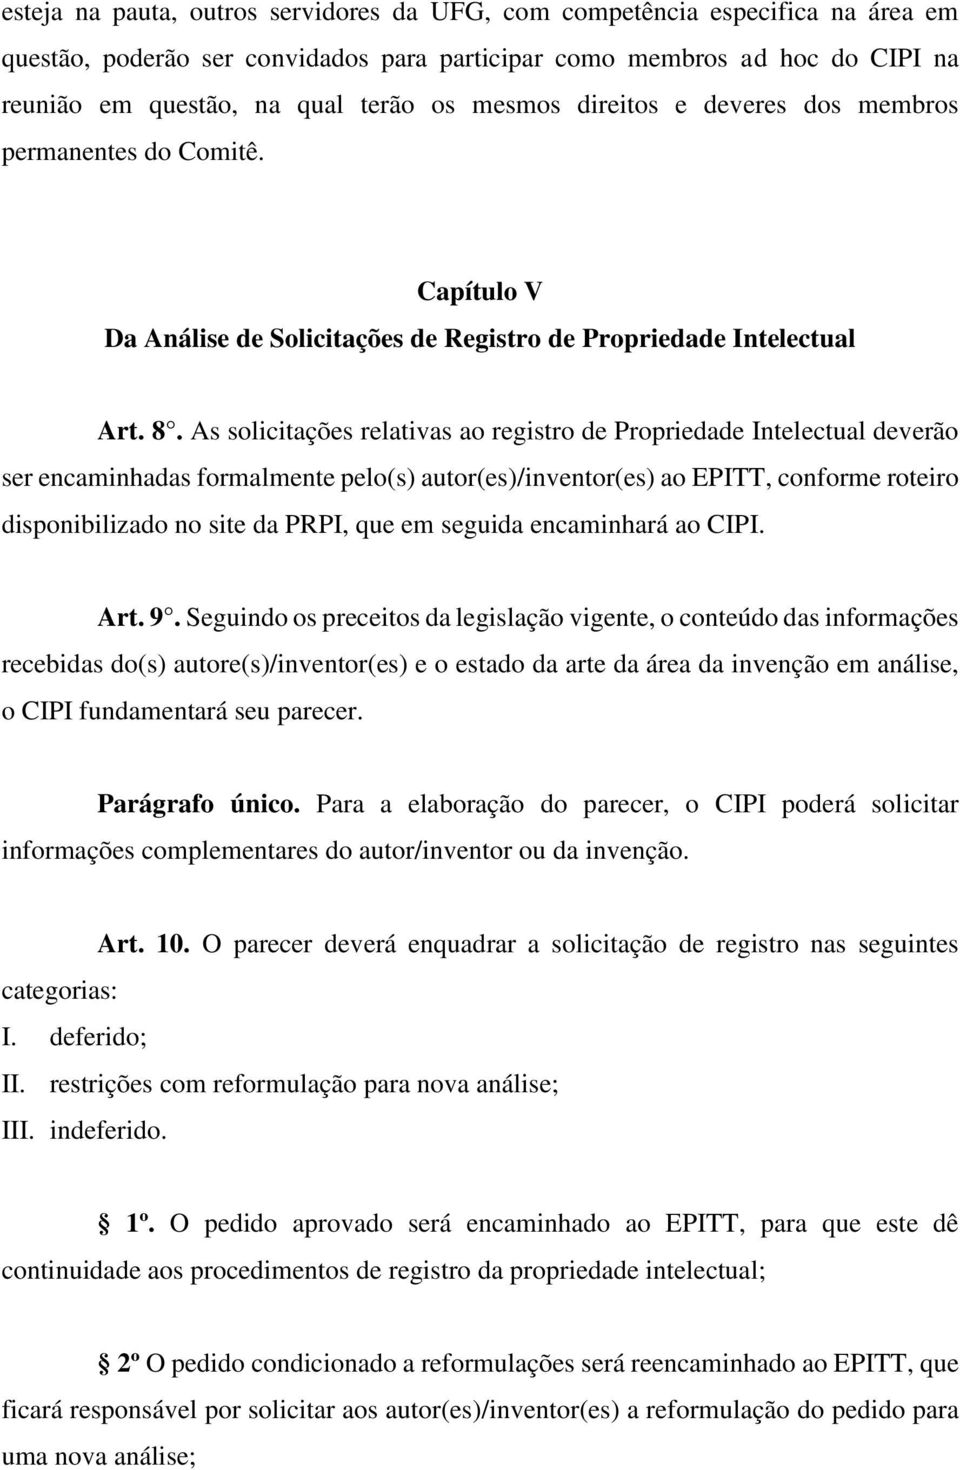 As solicitações relativas ao registro de Propriedade Intelectual deverão ser encaminhadas formalmente pelo(s) autor(es)/inventor(es) ao EPITT, conforme roteiro disponibilizado no site da PRPI, que em